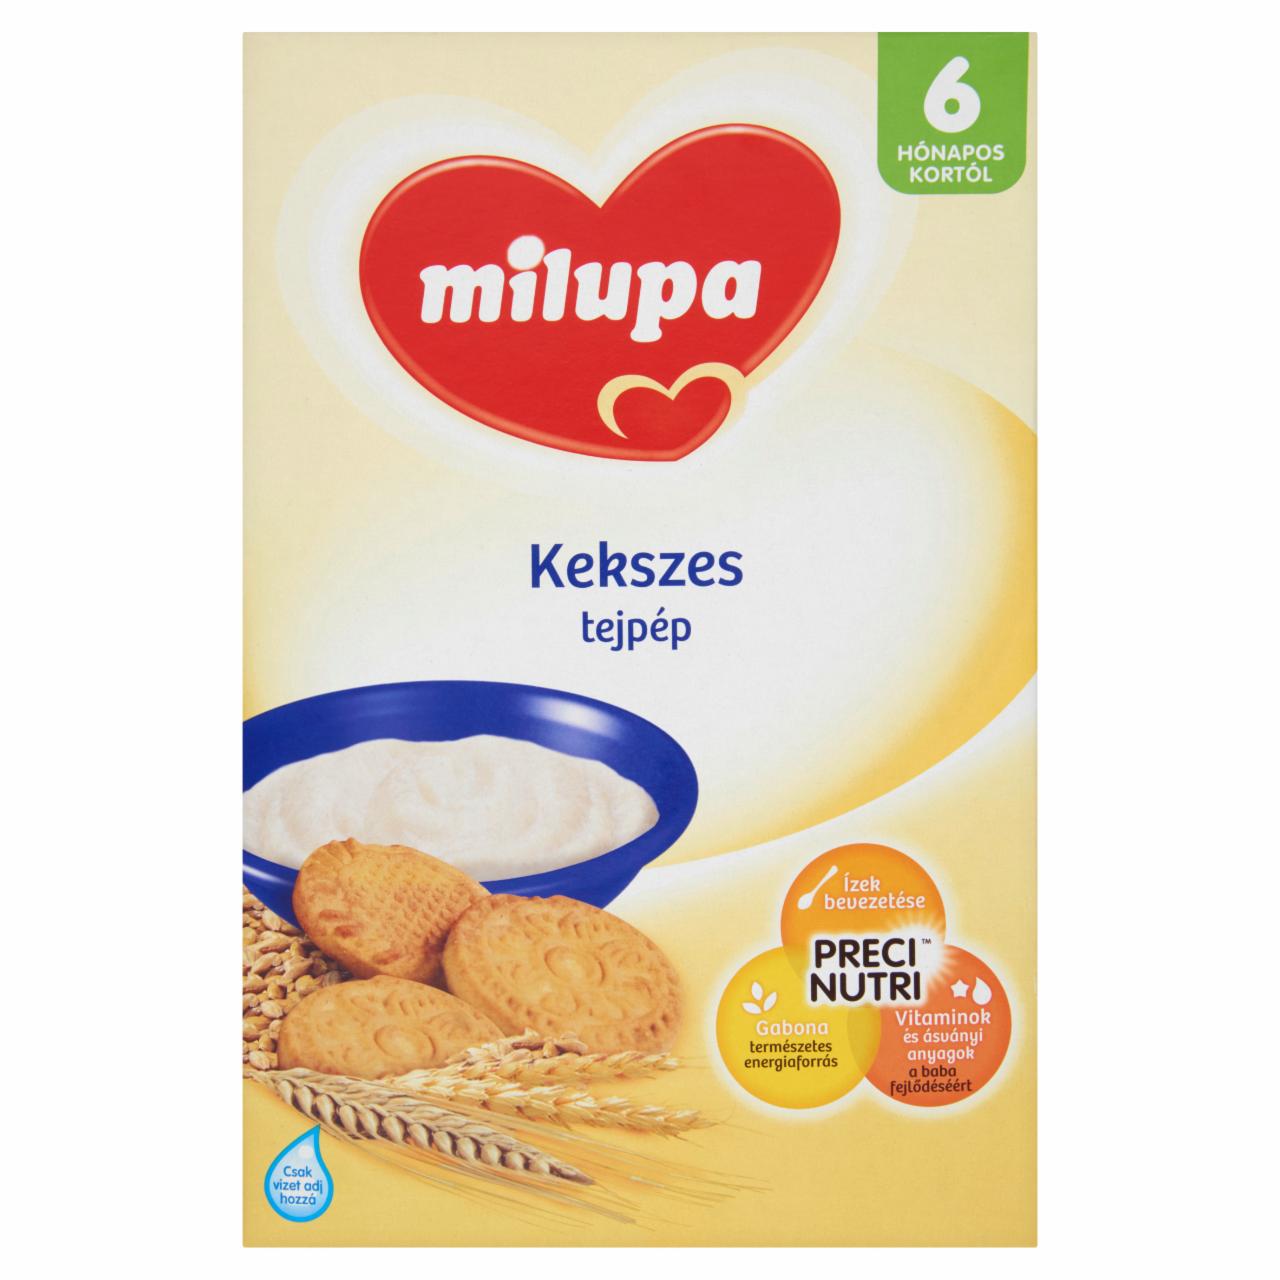 Képek - Milupa kekszes tejpép 6 hónapos kortól 250 g